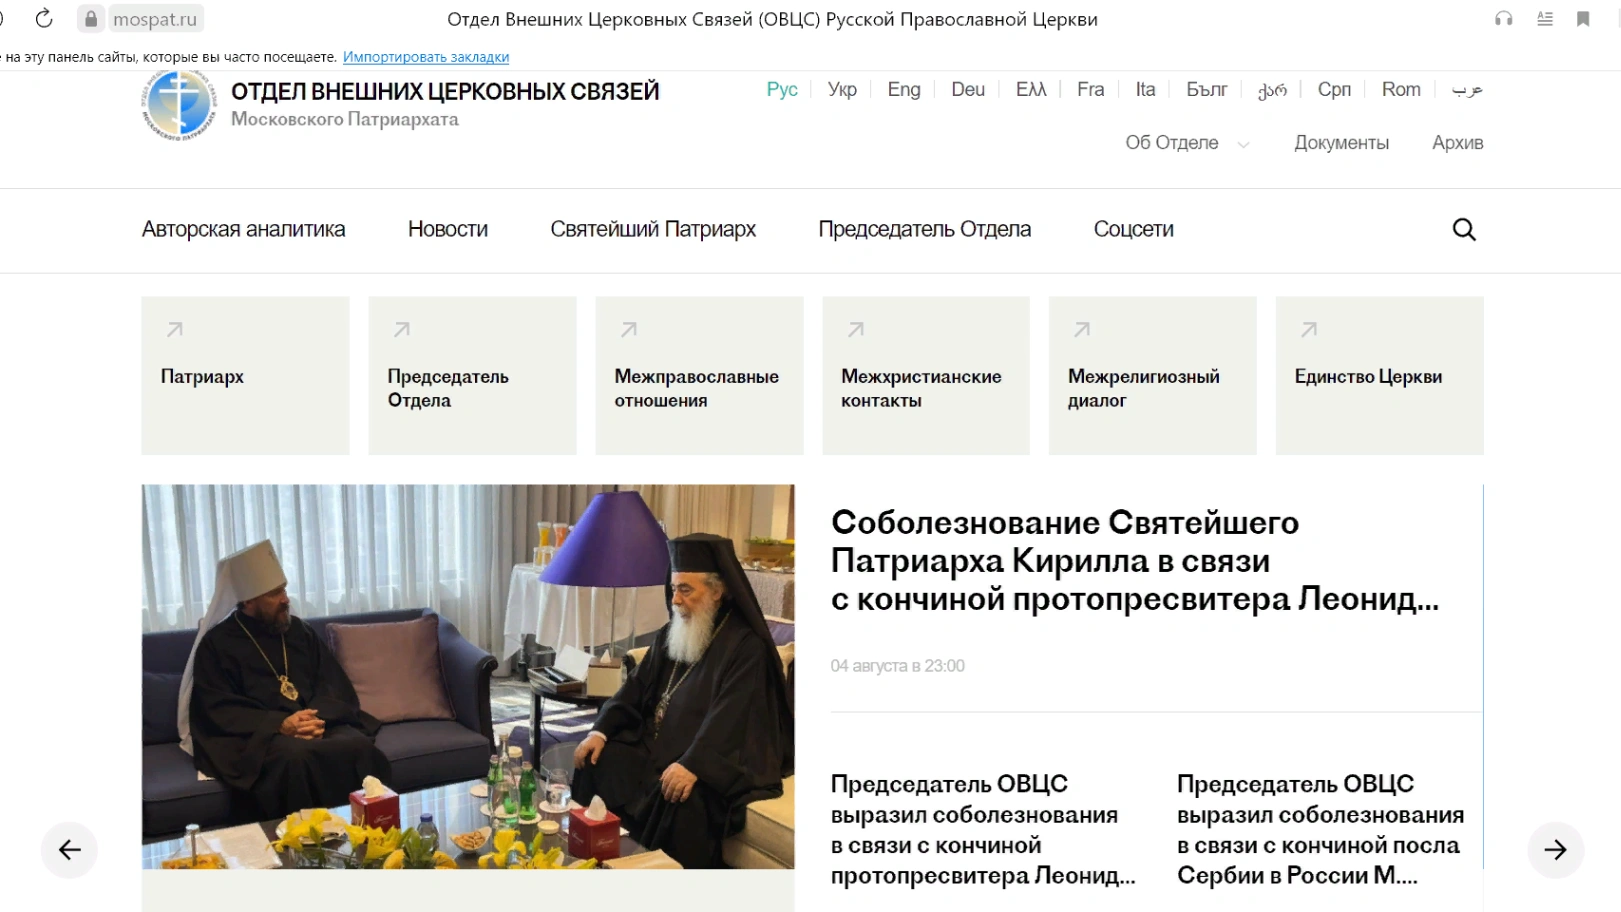 Создание сайта, освещающего внешнюю деятельность Русской православной церкви